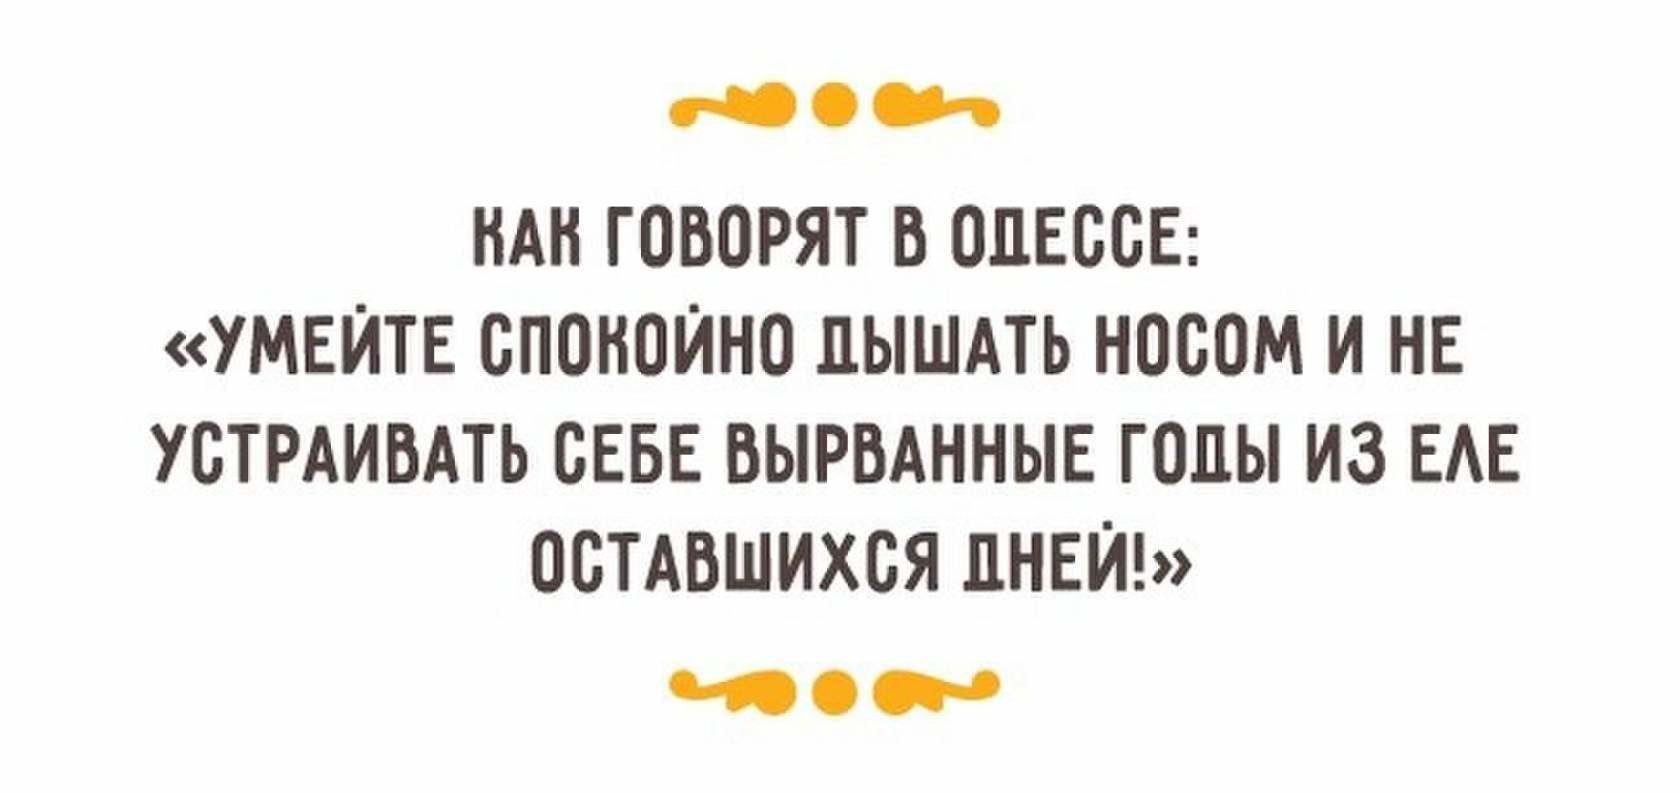 Юмор о жизни в картинках с надписями Одесский